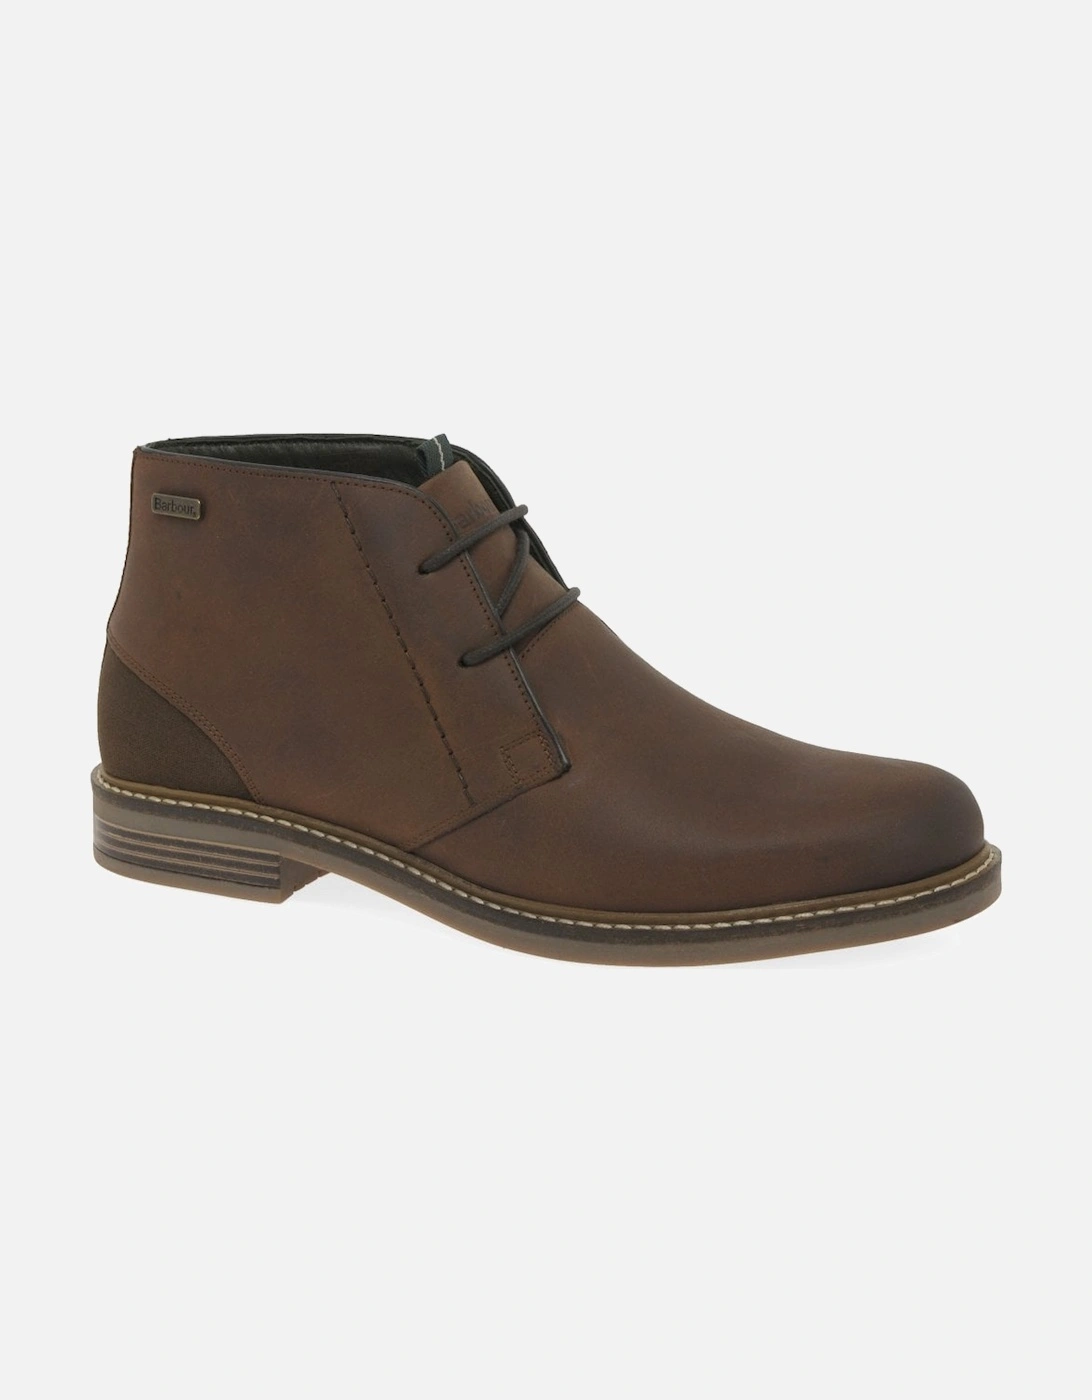 Readhead Mens Leather Chukka Boots, 7 of 6